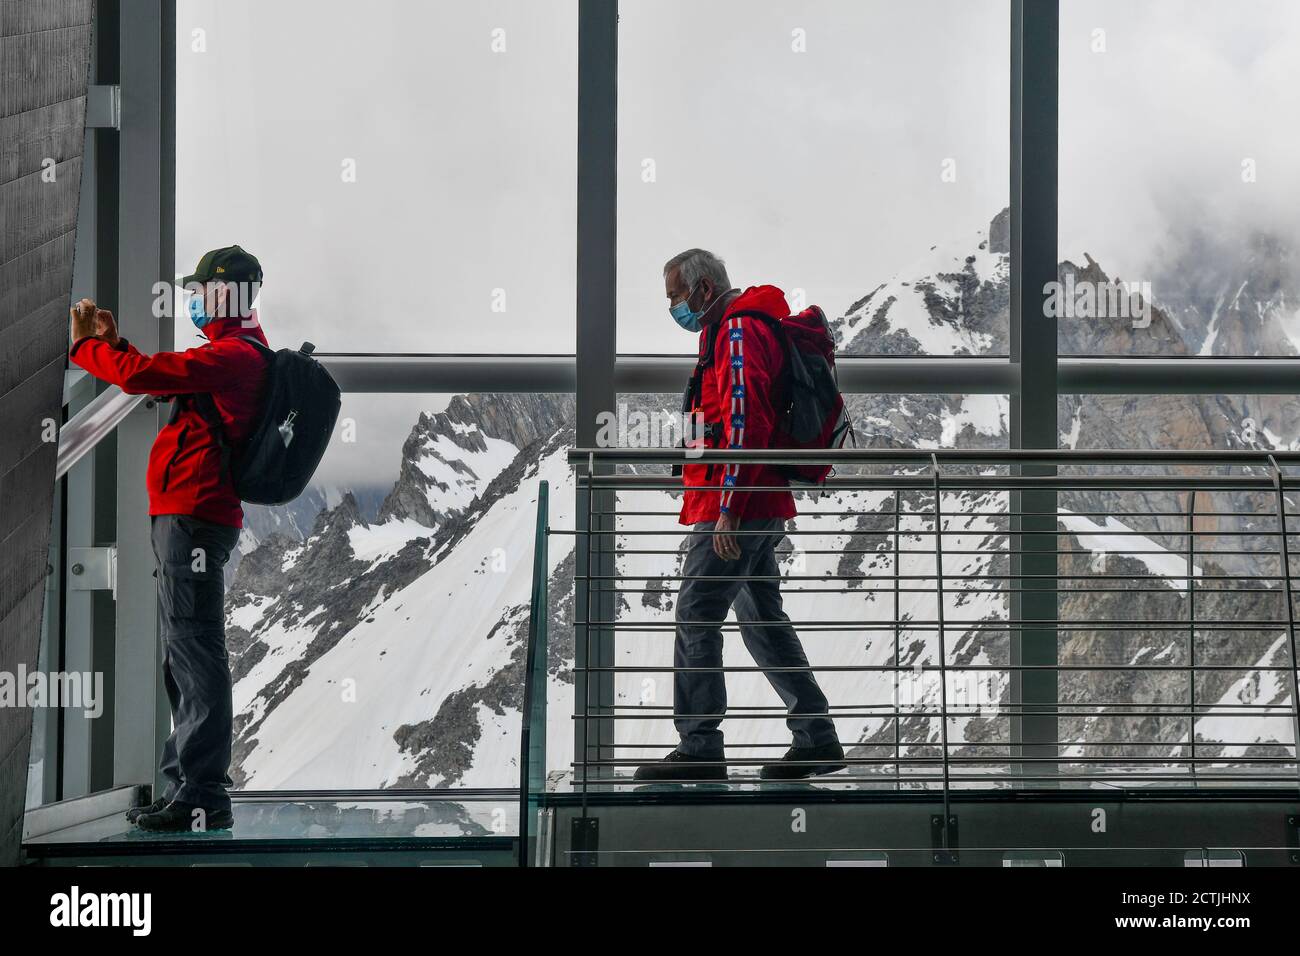 Ein älteres Paar in der Pointe Helbronner Station der Seilbahn Skyway Monte Bianco mit Blick auf das Mont Blanc Massiv, Courmayeur, Aosta, Italien Stockfoto